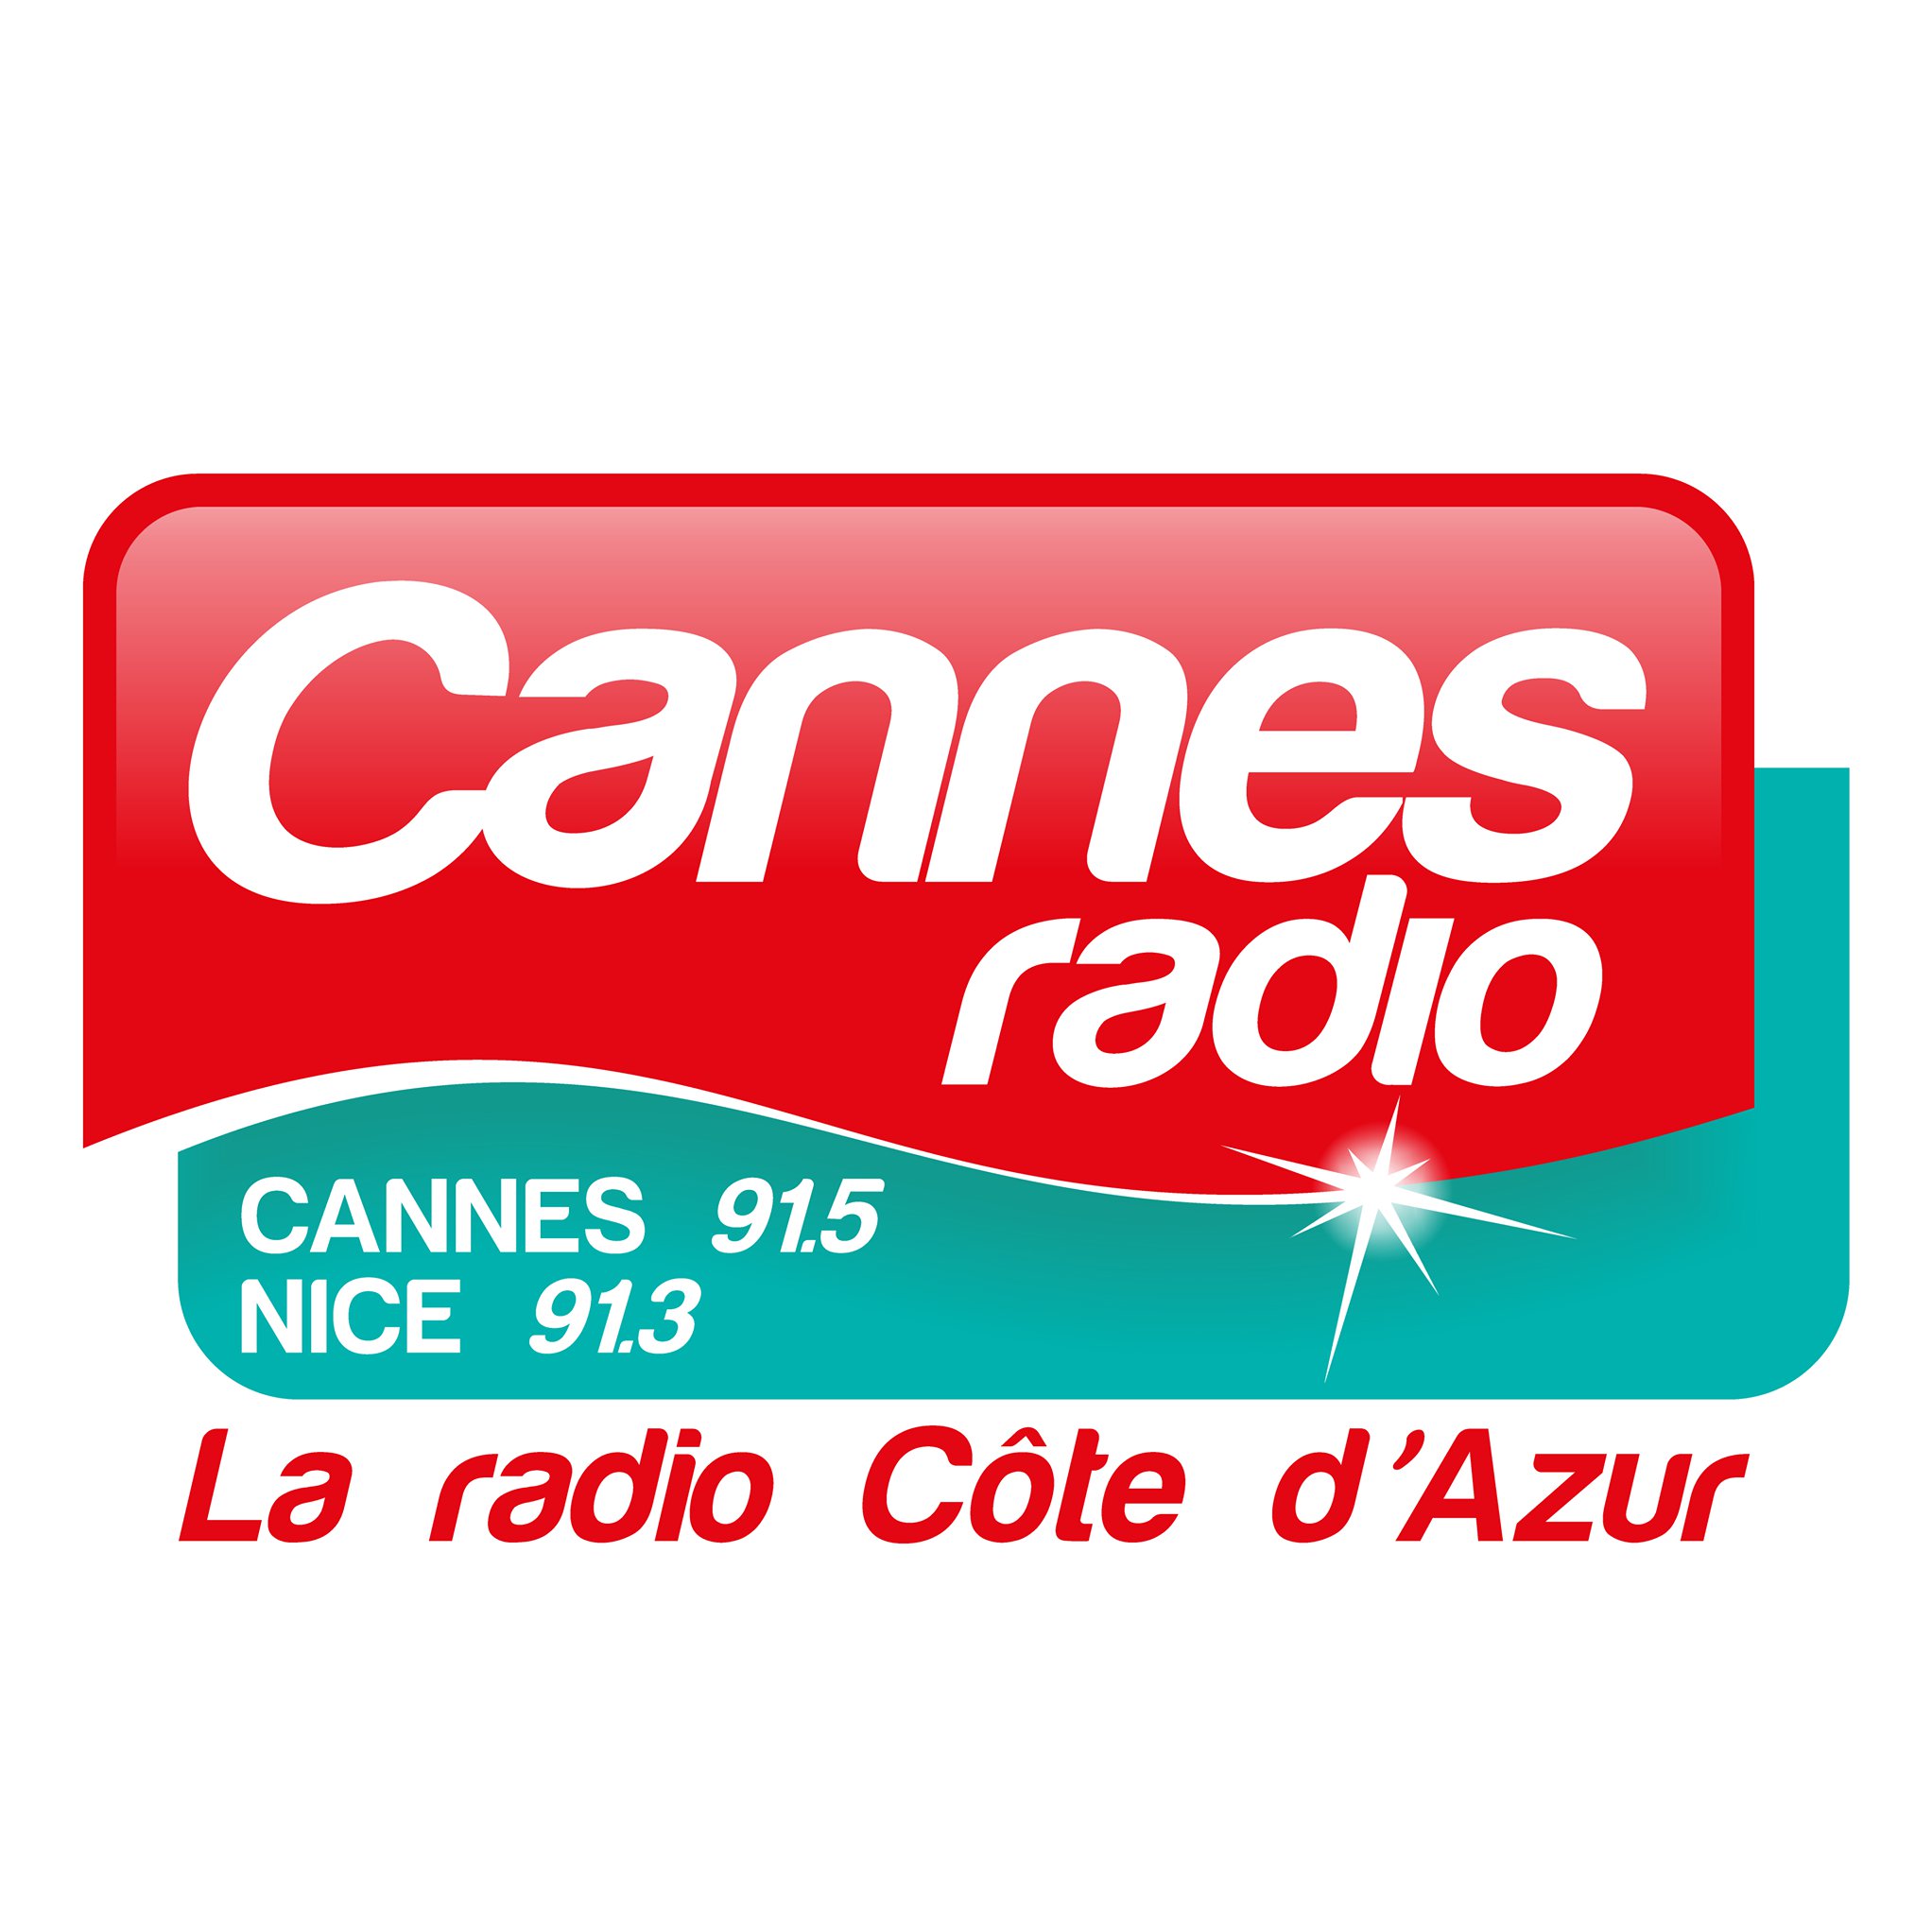 Cannes Radio recrute un(e) commercial(e)